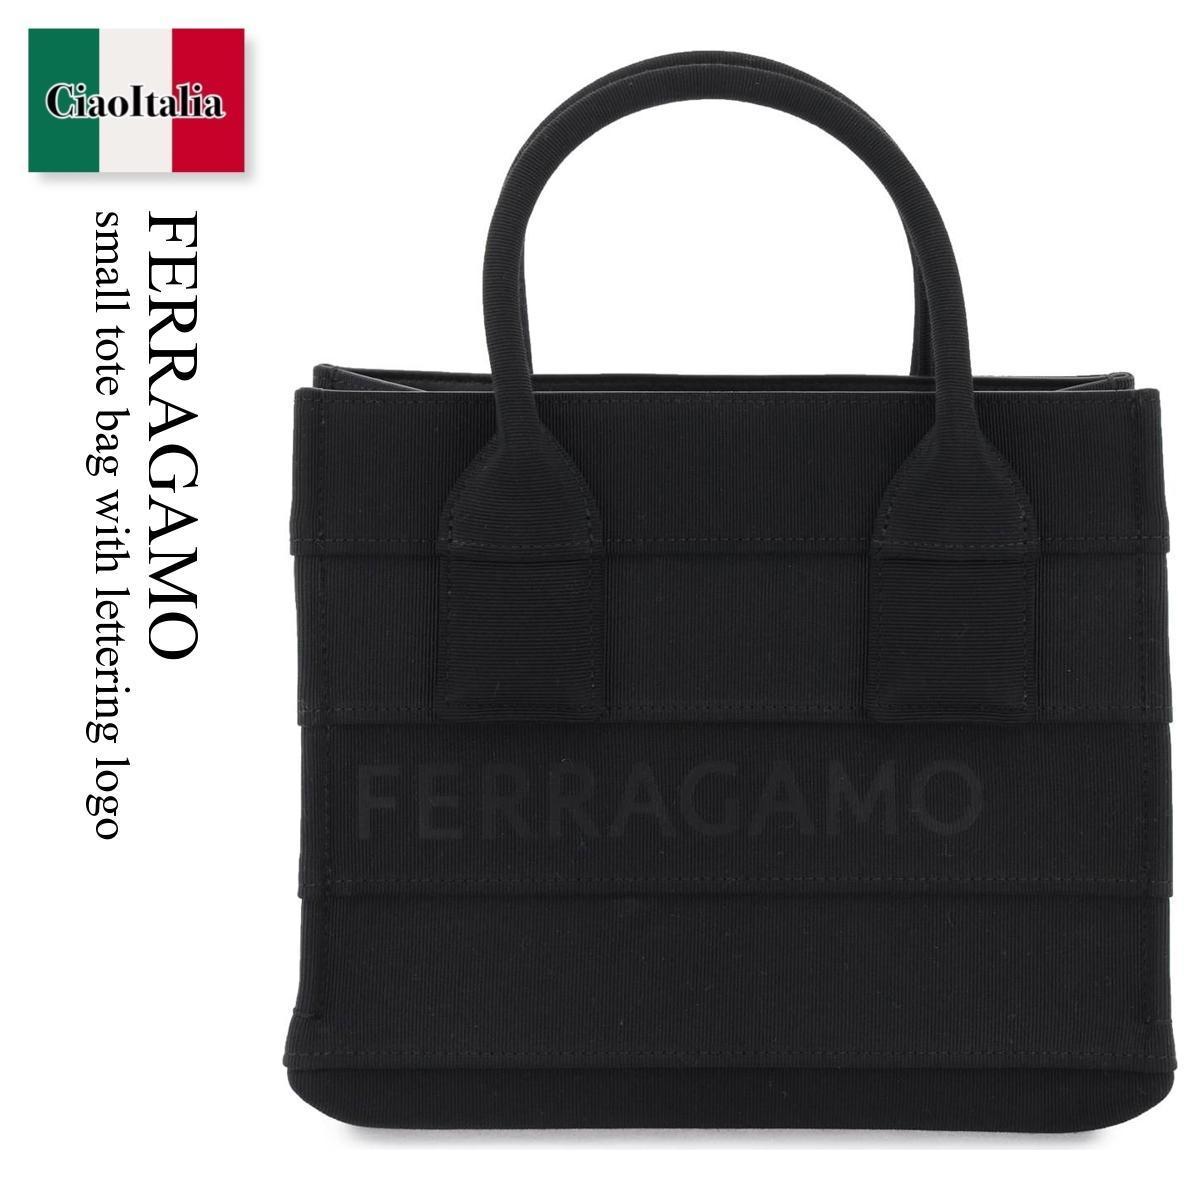 フェラガモ トートバッグ レディース フェラガモ / Ferragamo Small Tote Bag With Lettering Logo / 2149880765802 / 2149880765802 001 / 2149880765802001 / トートバッグ / 「正規品補償」「VIP価格販売」「お買い物サポート」